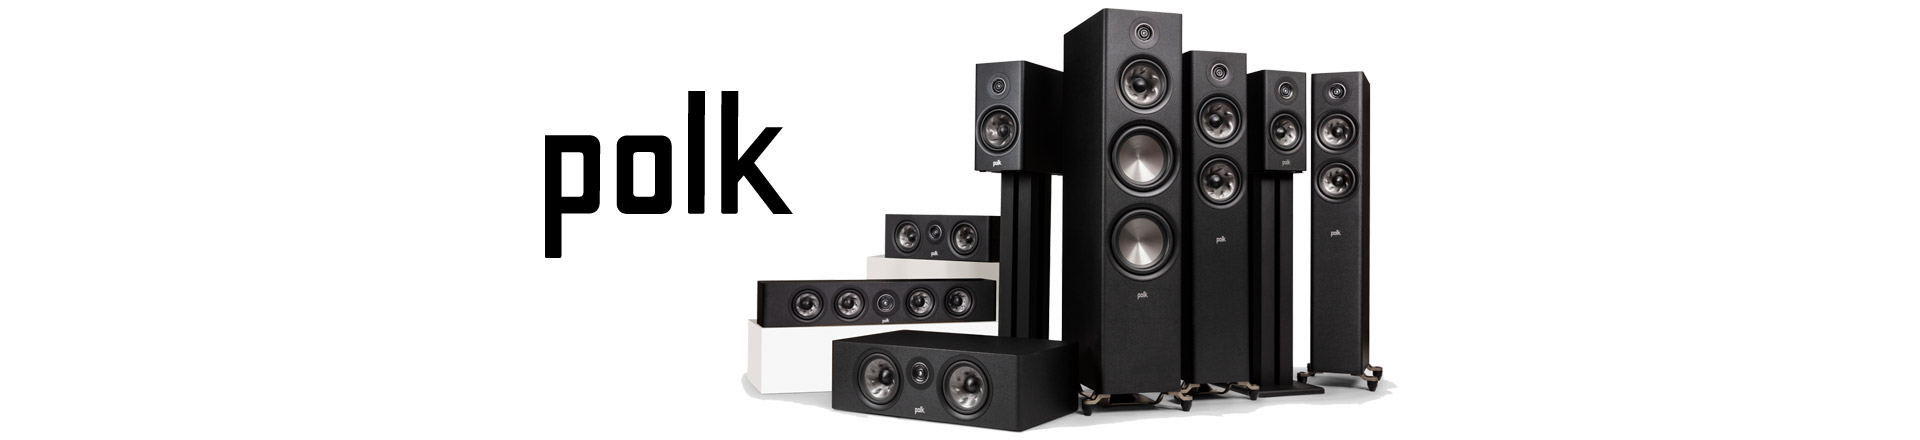 Polk Audio w wydaniu Premium - nowa seria głośników Reserve